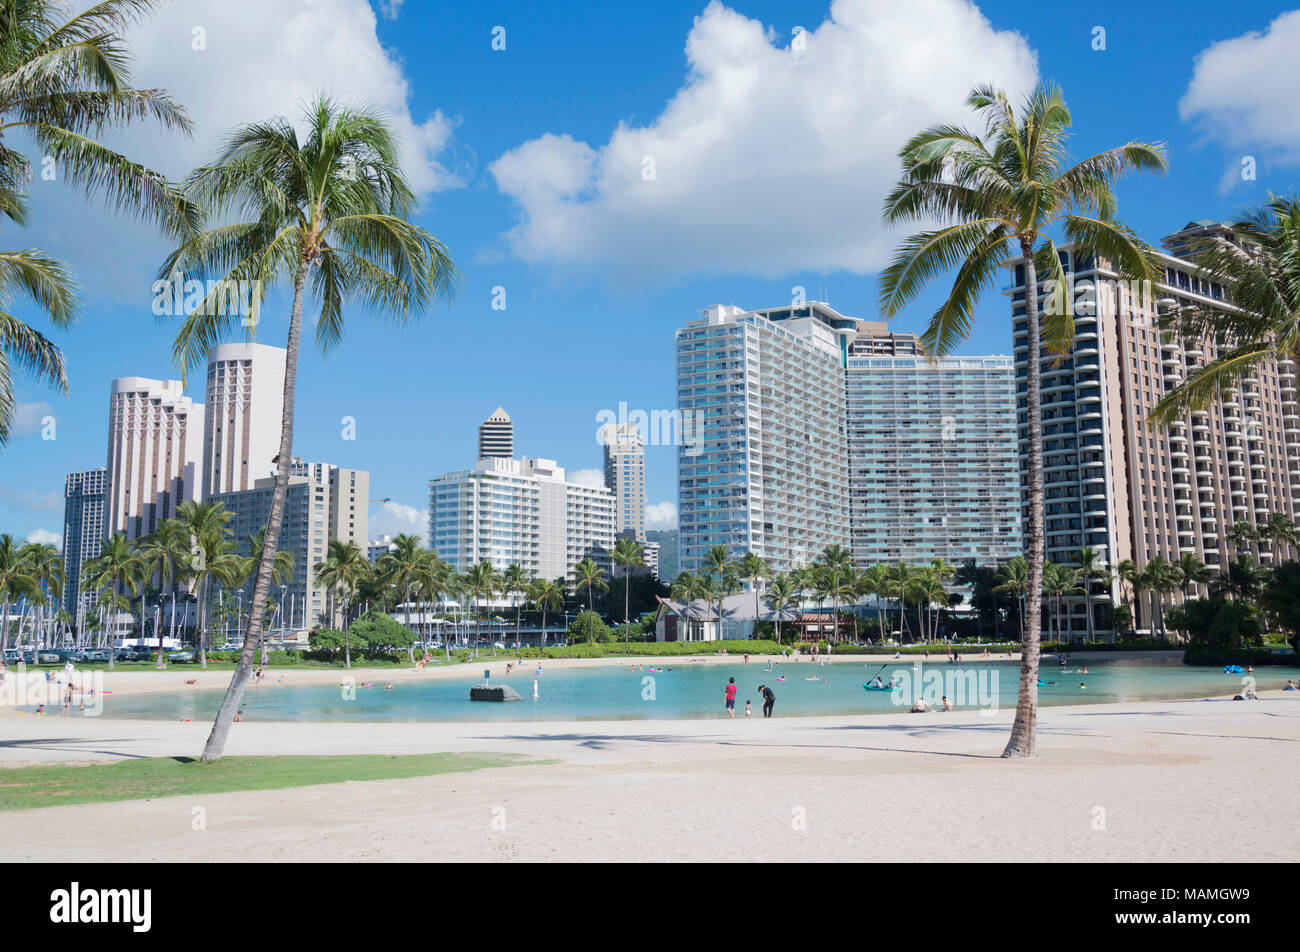 Waikiki ist ein beliebter und romantische Tourist Resort in Oahu, Hawaii. Touristen, Palmen, Sonne und Strand in Waikiki, Oahu, Hawaii Feb 1, 2018: Stockfoto